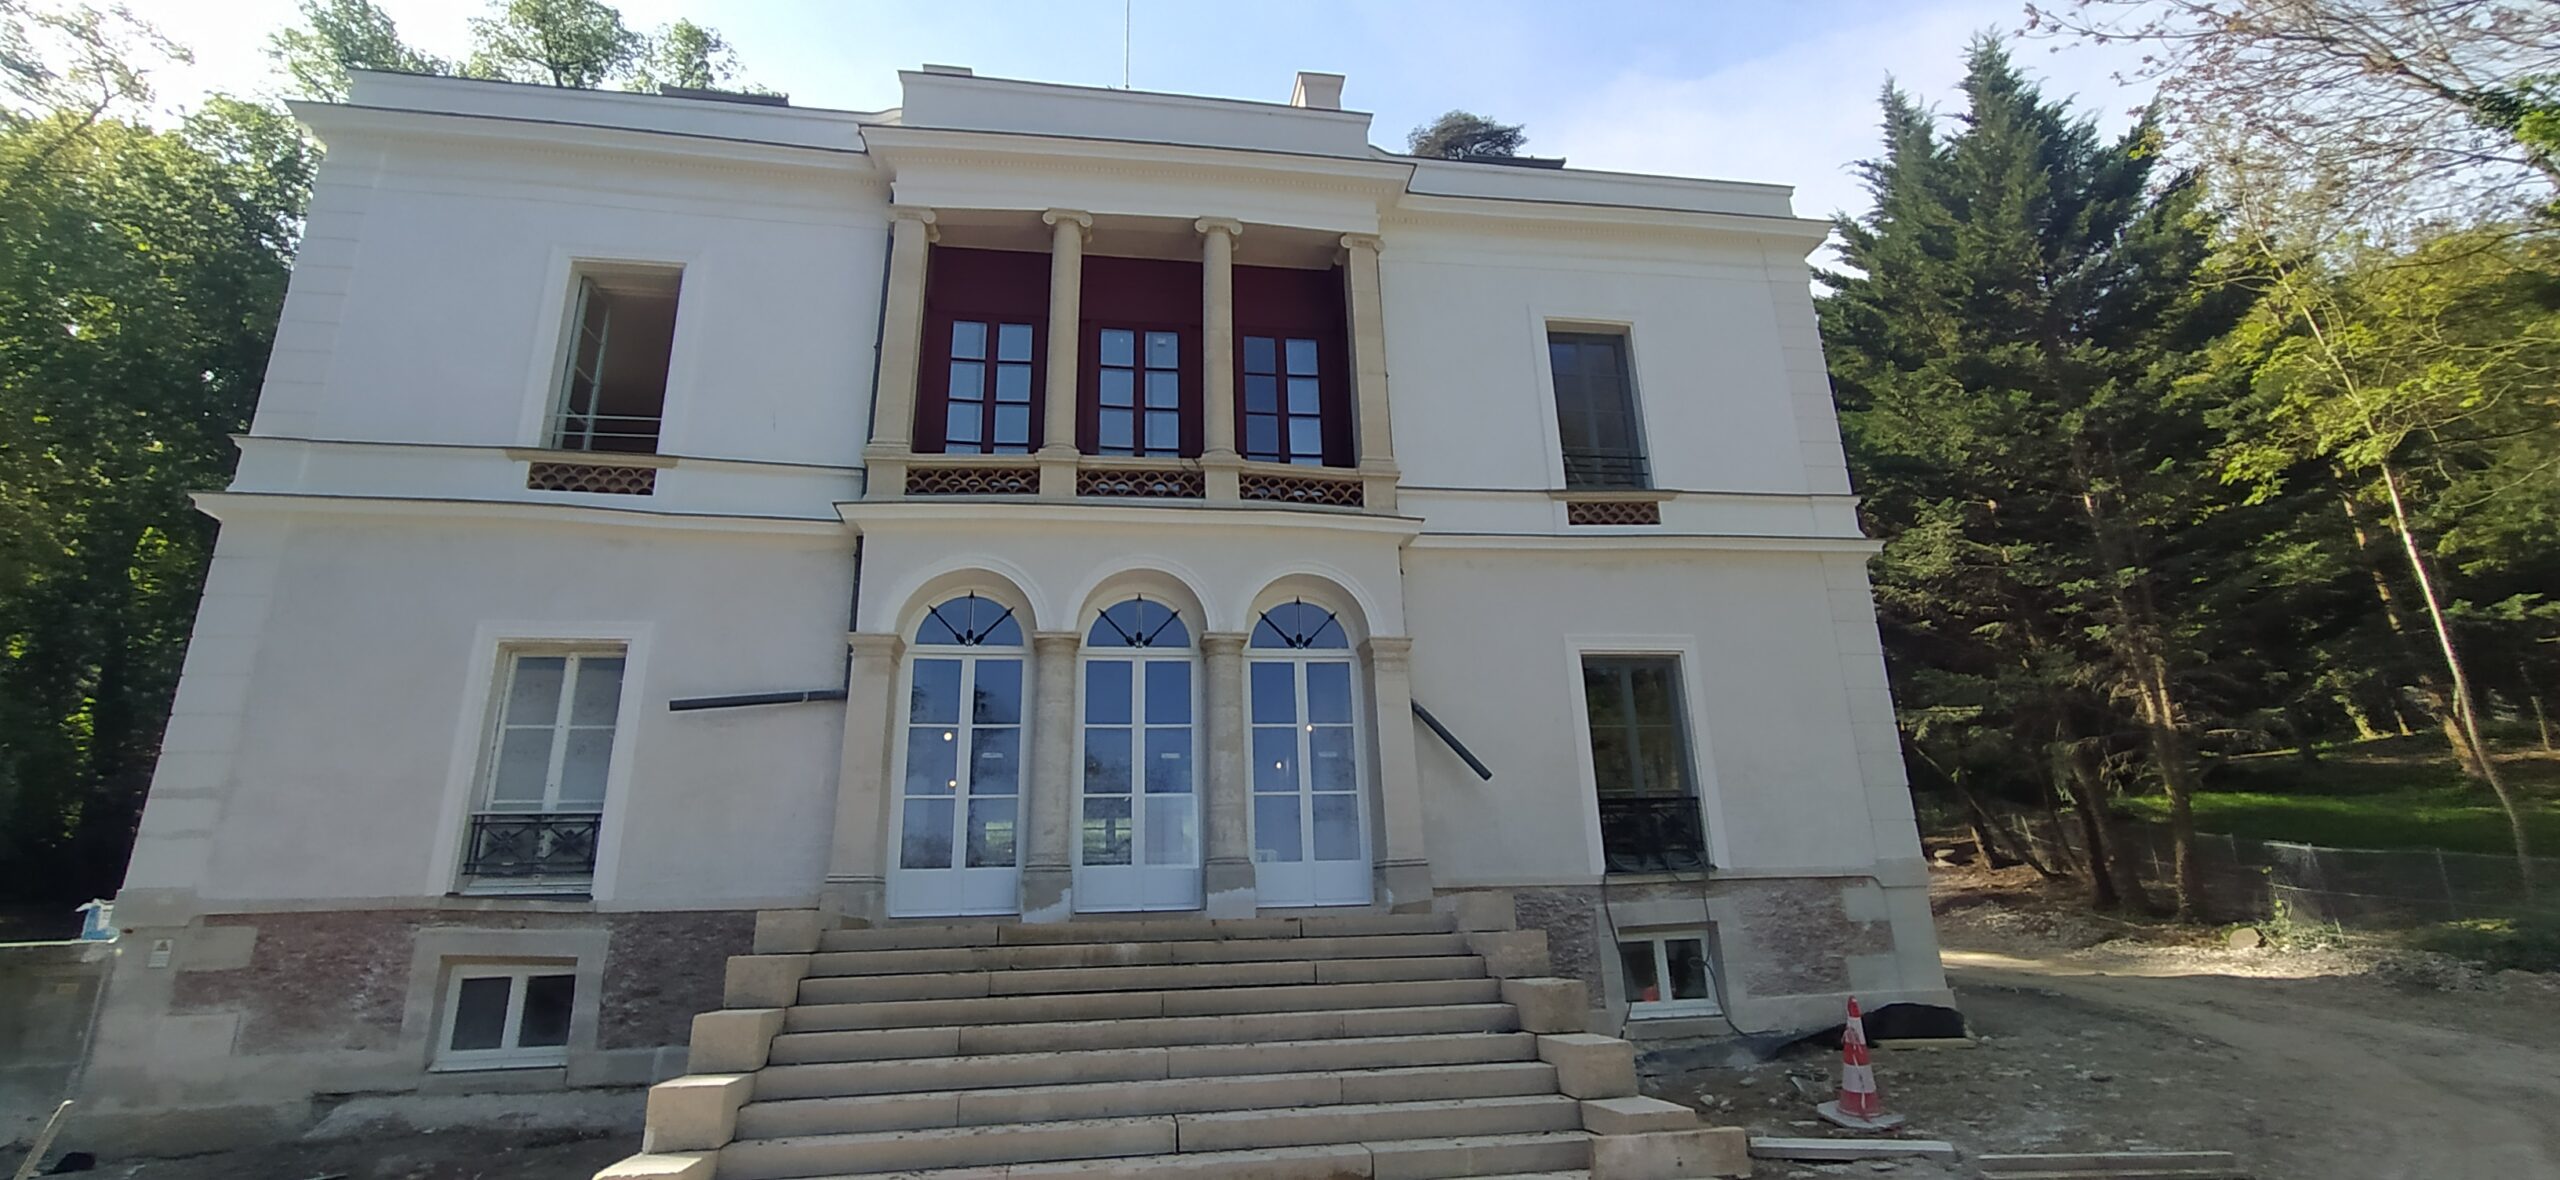 Villa Pauline Viardot, Bougival (78) – MH